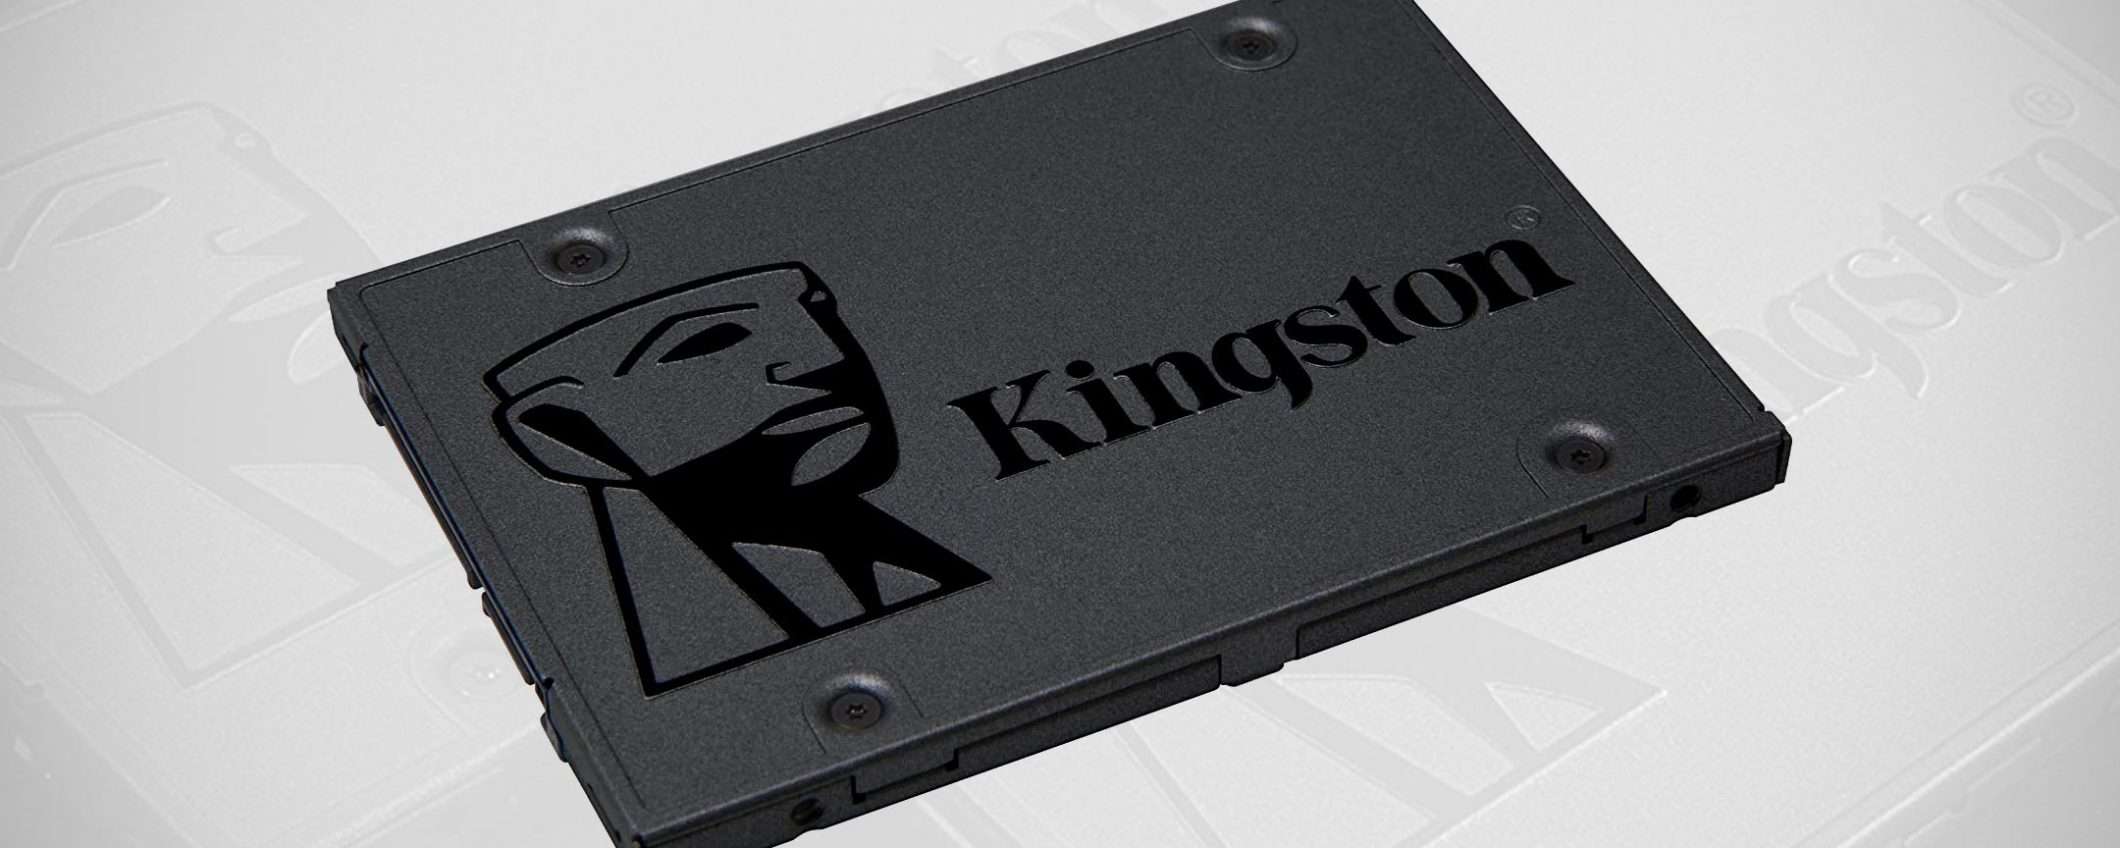 SSD Kingston A400 da 240 GB: il MINIMO STORICO è su Amazon